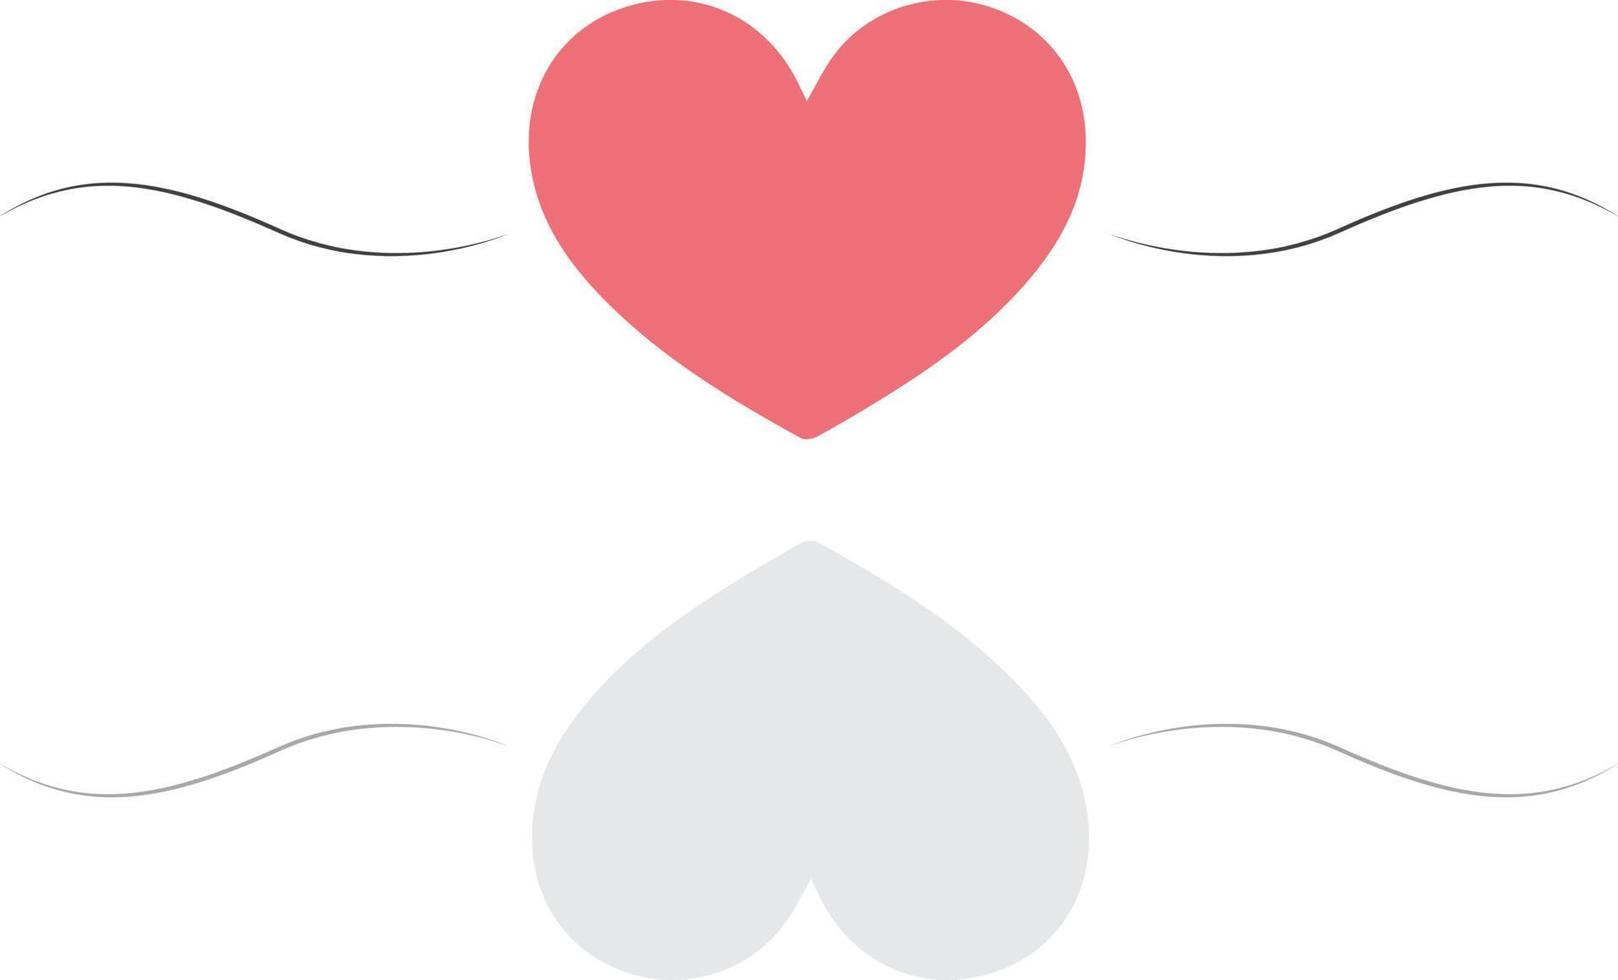 collection d'illustrations de coeur, jeu d'icônes de symbole d'amour vecteur